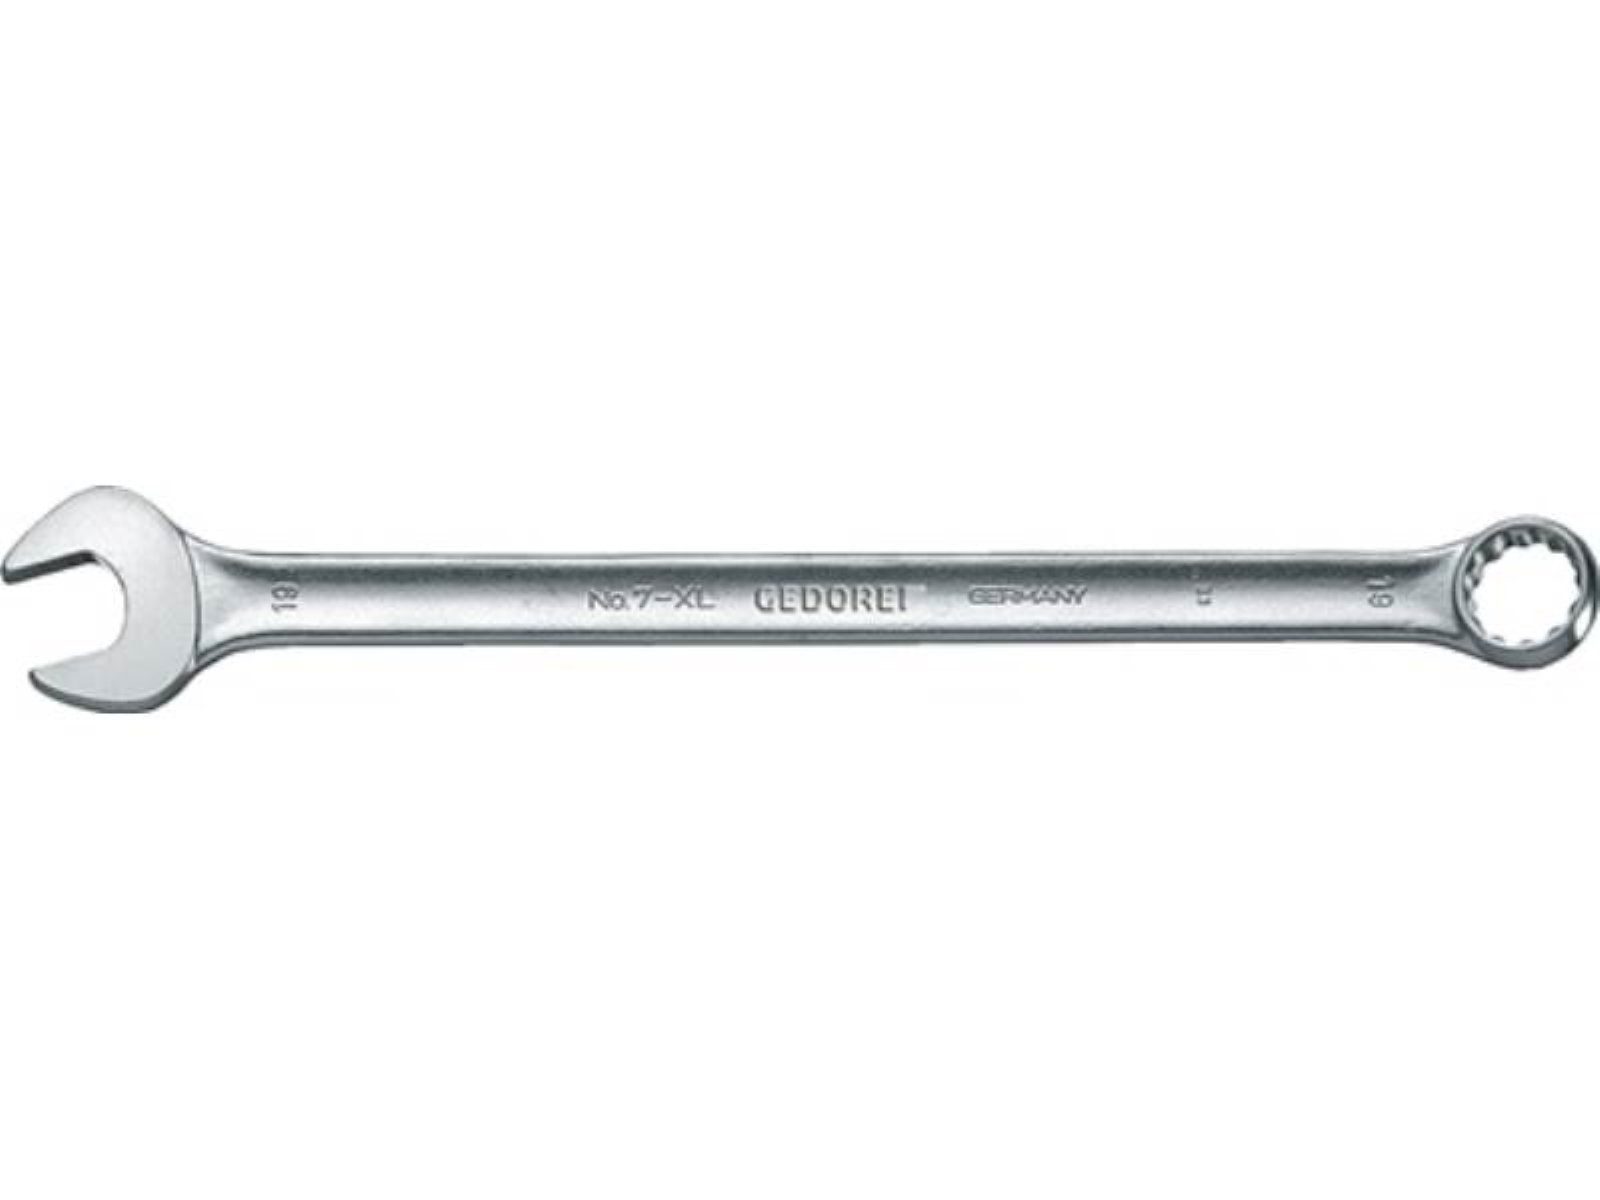 Gedore Maulschlüssel Ringmaulschlüssel 7 XL SW 36mm L.550mm Form A ext.lang CV-Stahl GEDOR